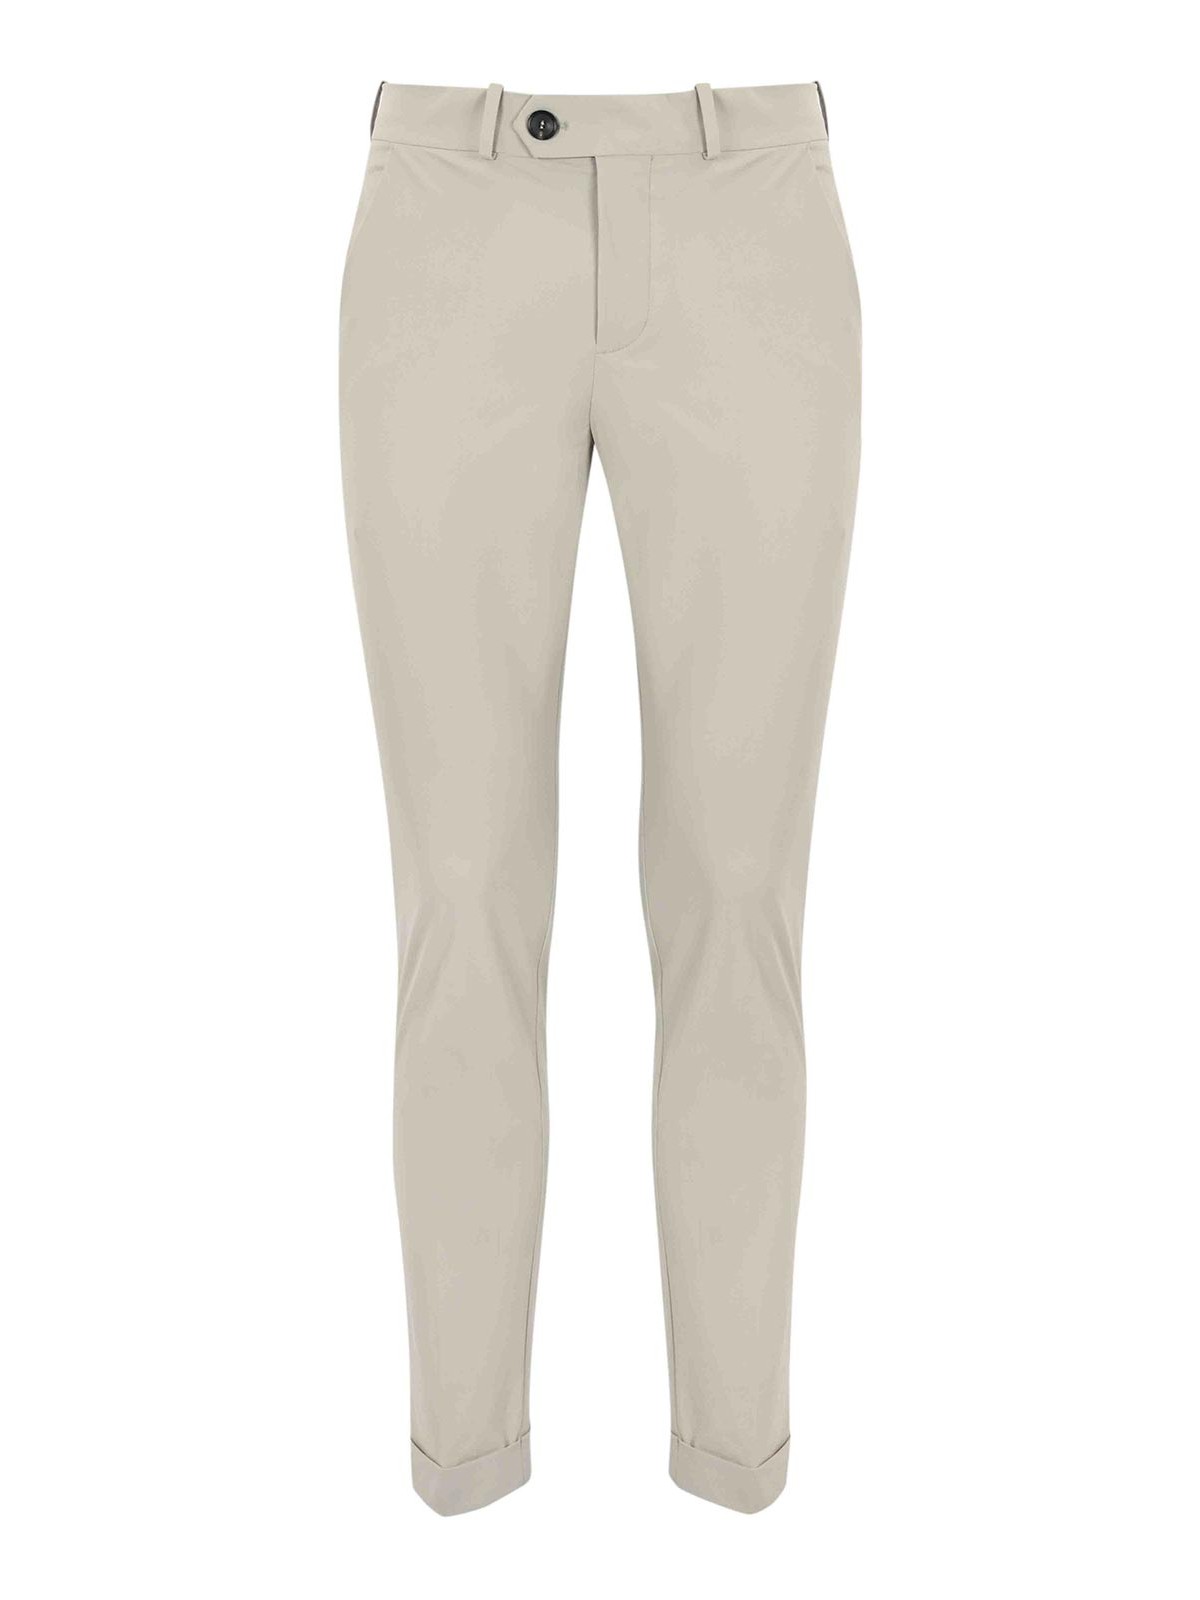 Rrd Roberto Ricci Designs Chino Trousers In Technical Fabric In White